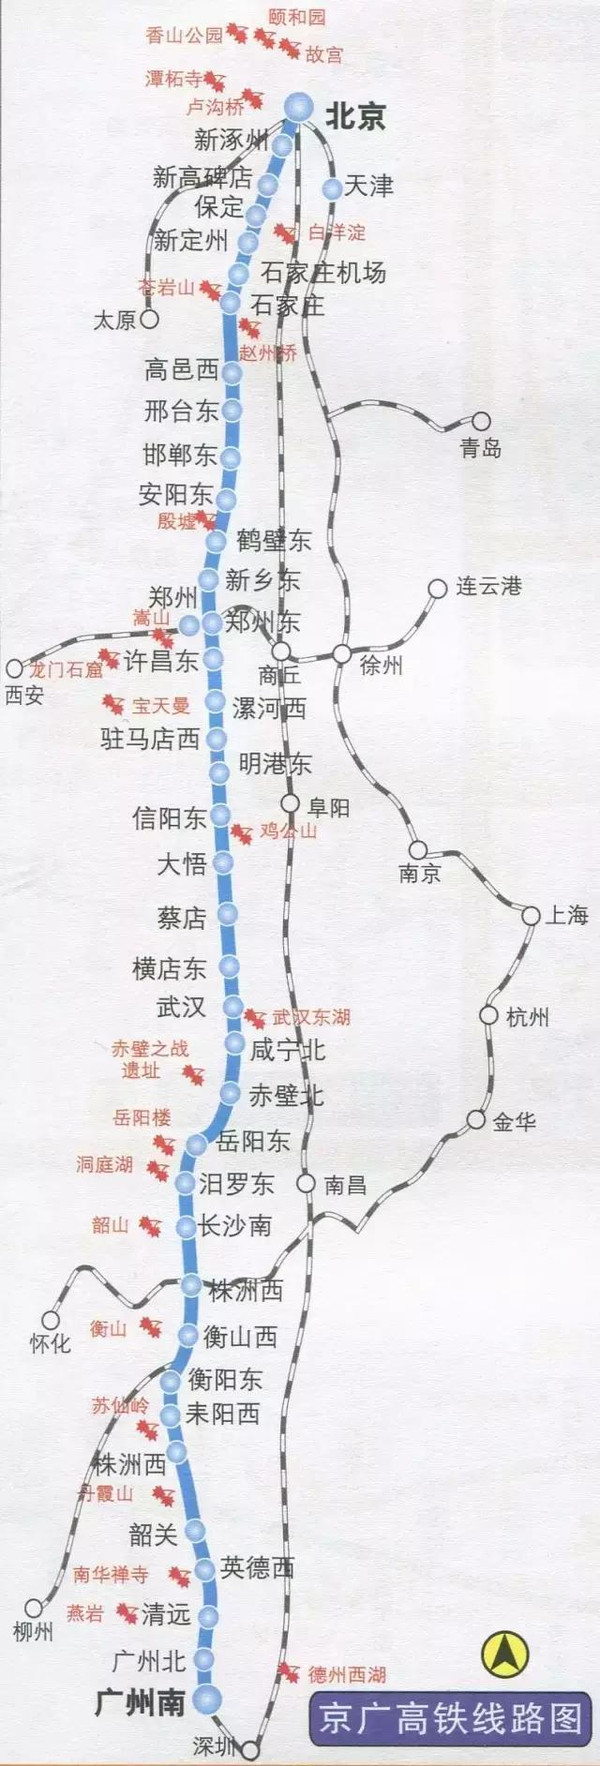 京九高铁走向敲定!7个小时带你穿越中国!